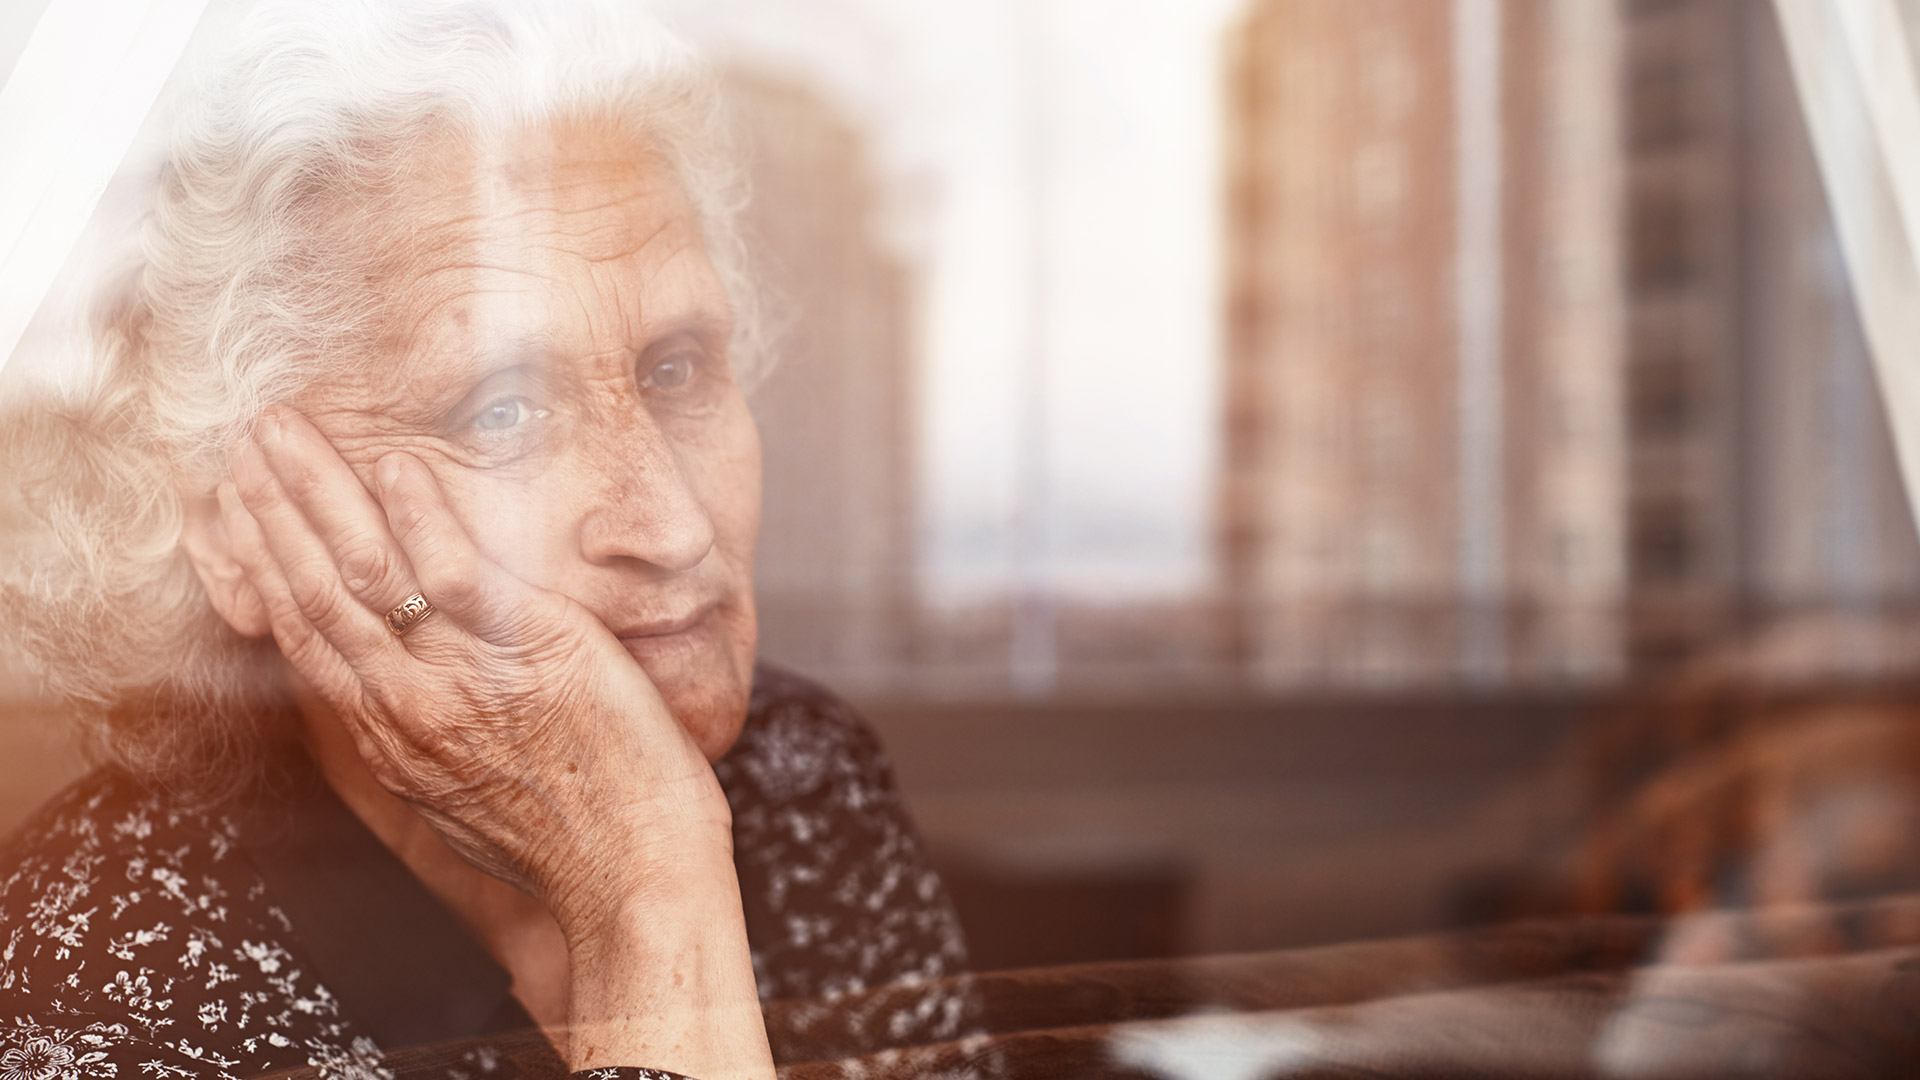 Quienes cuidan a una persona con Alzheimer en su casa, debe estar capacitada y con buenos consejos médicos